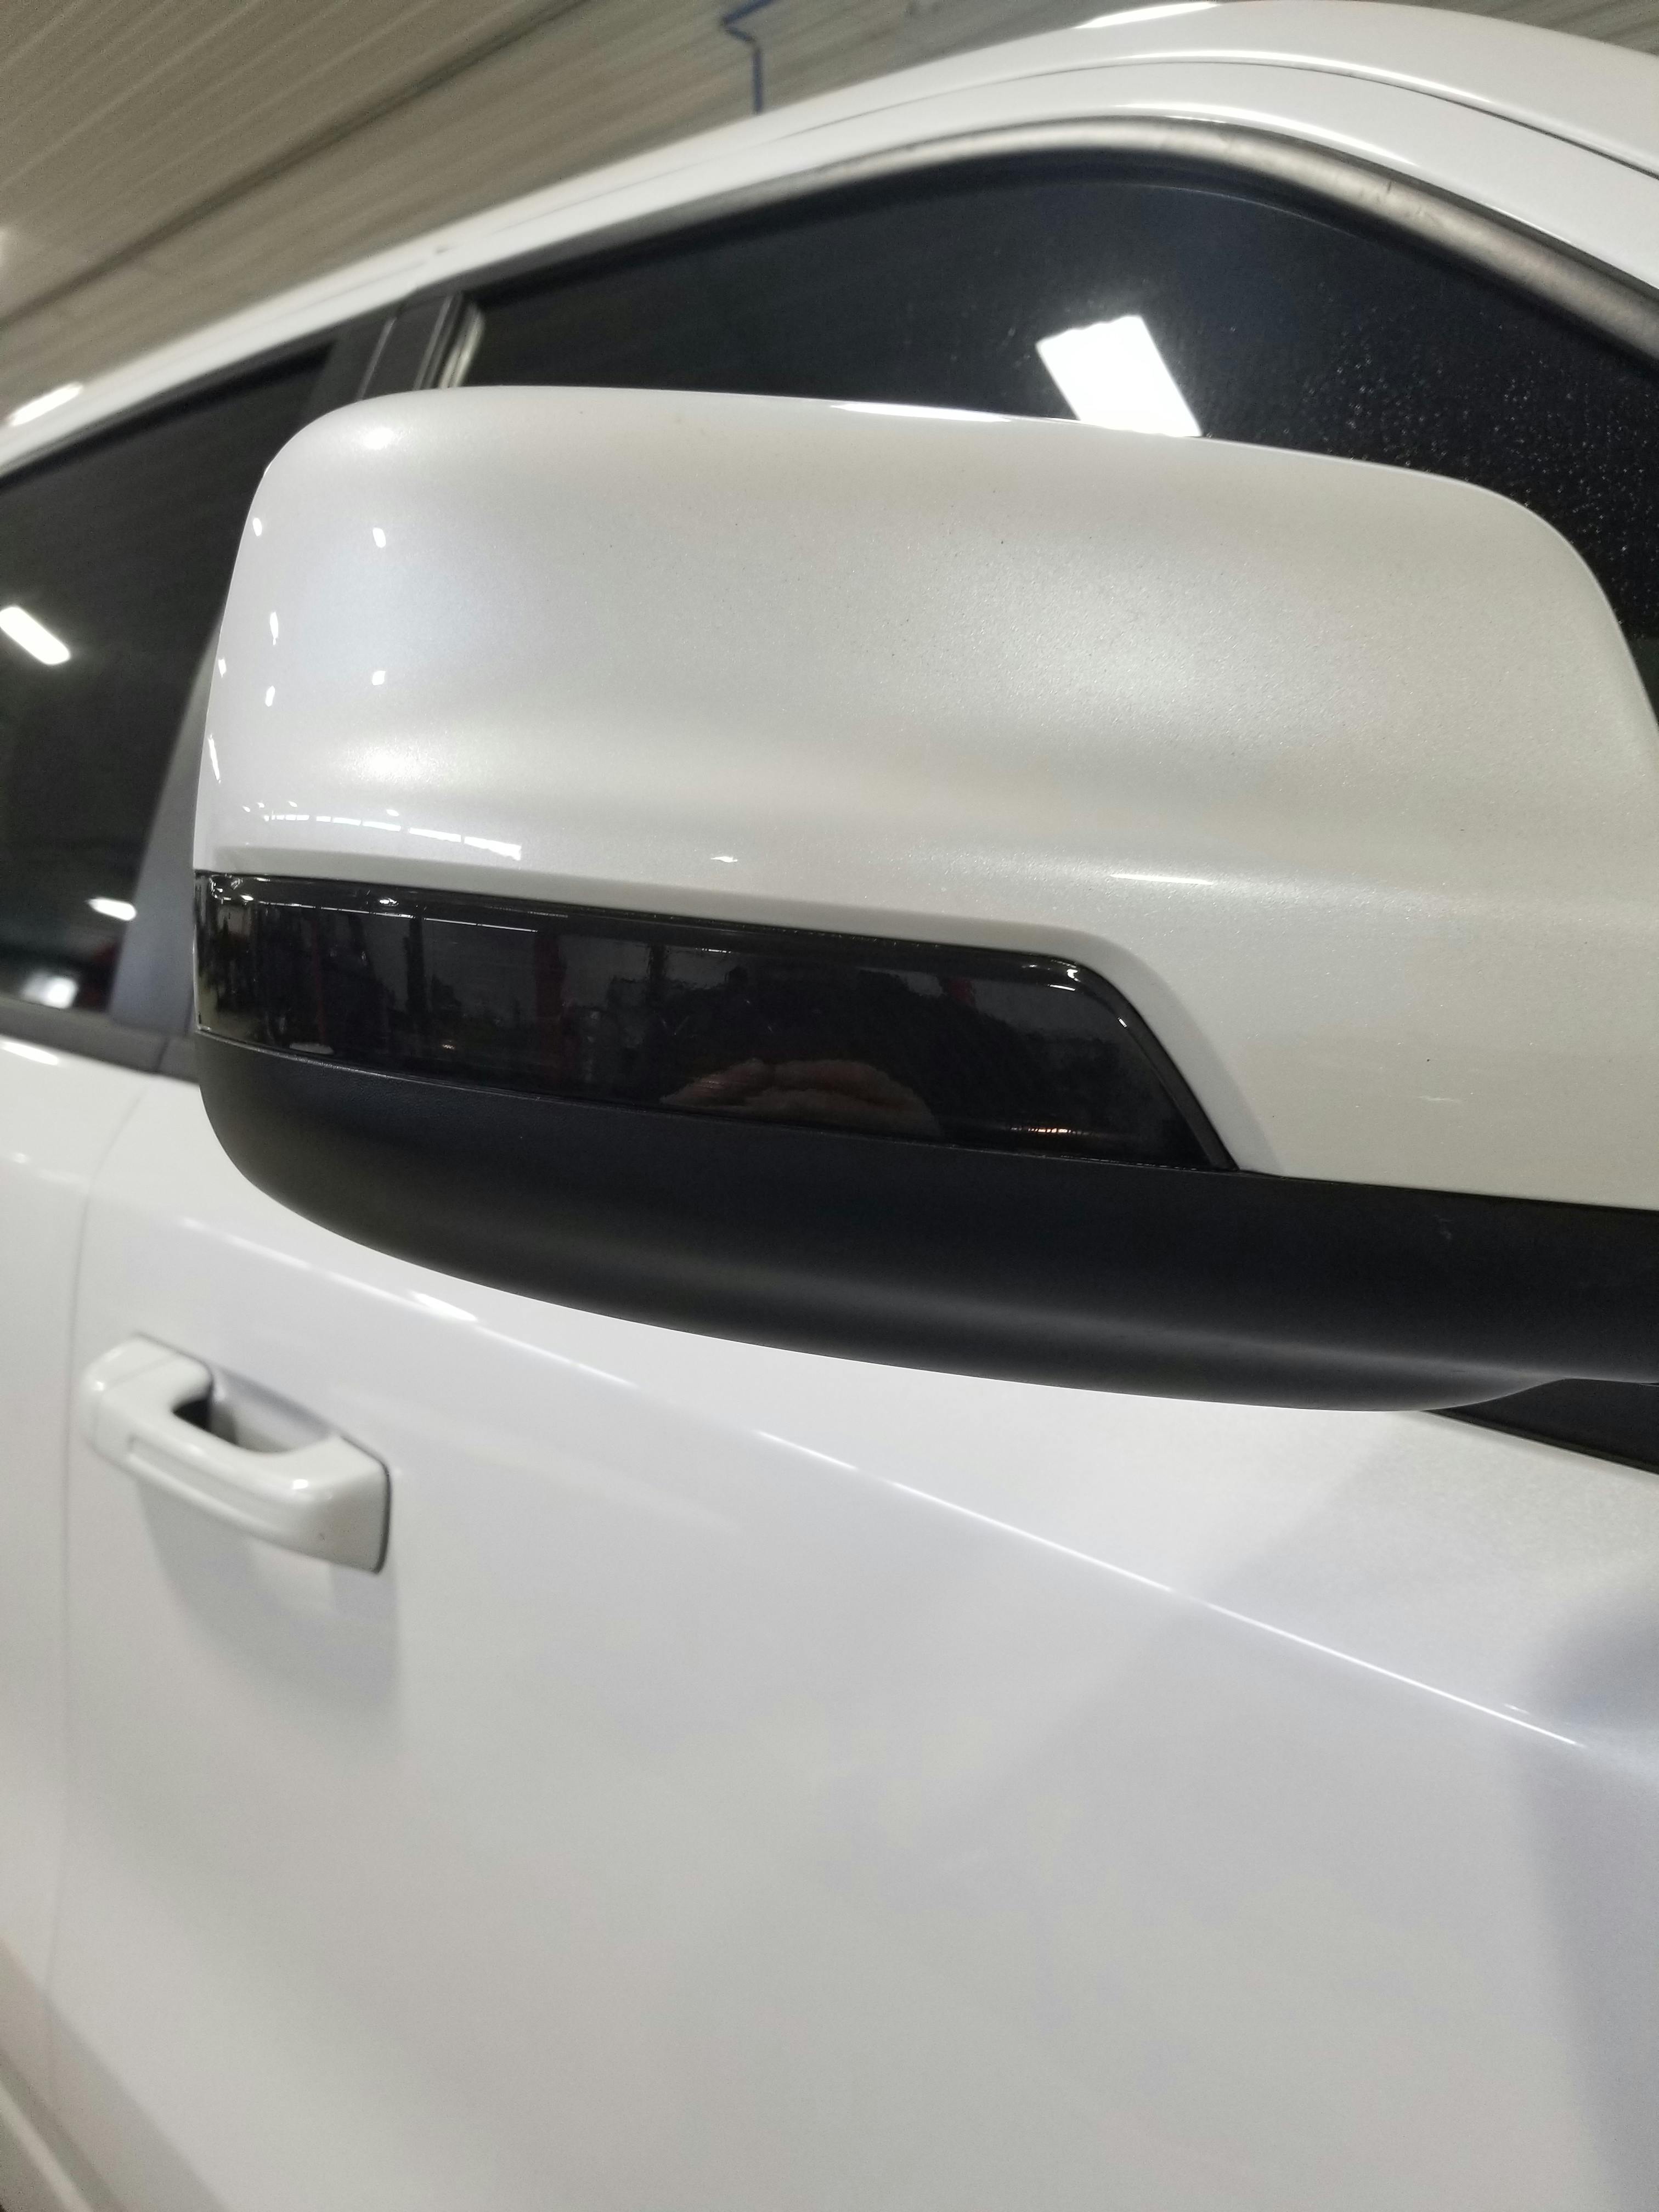 2019+ RAM 1500 Third Brake Light Tint Kit - Overlays — Luxe Auto Concepts 2019 Ram 1500 Third Brake Light Cover